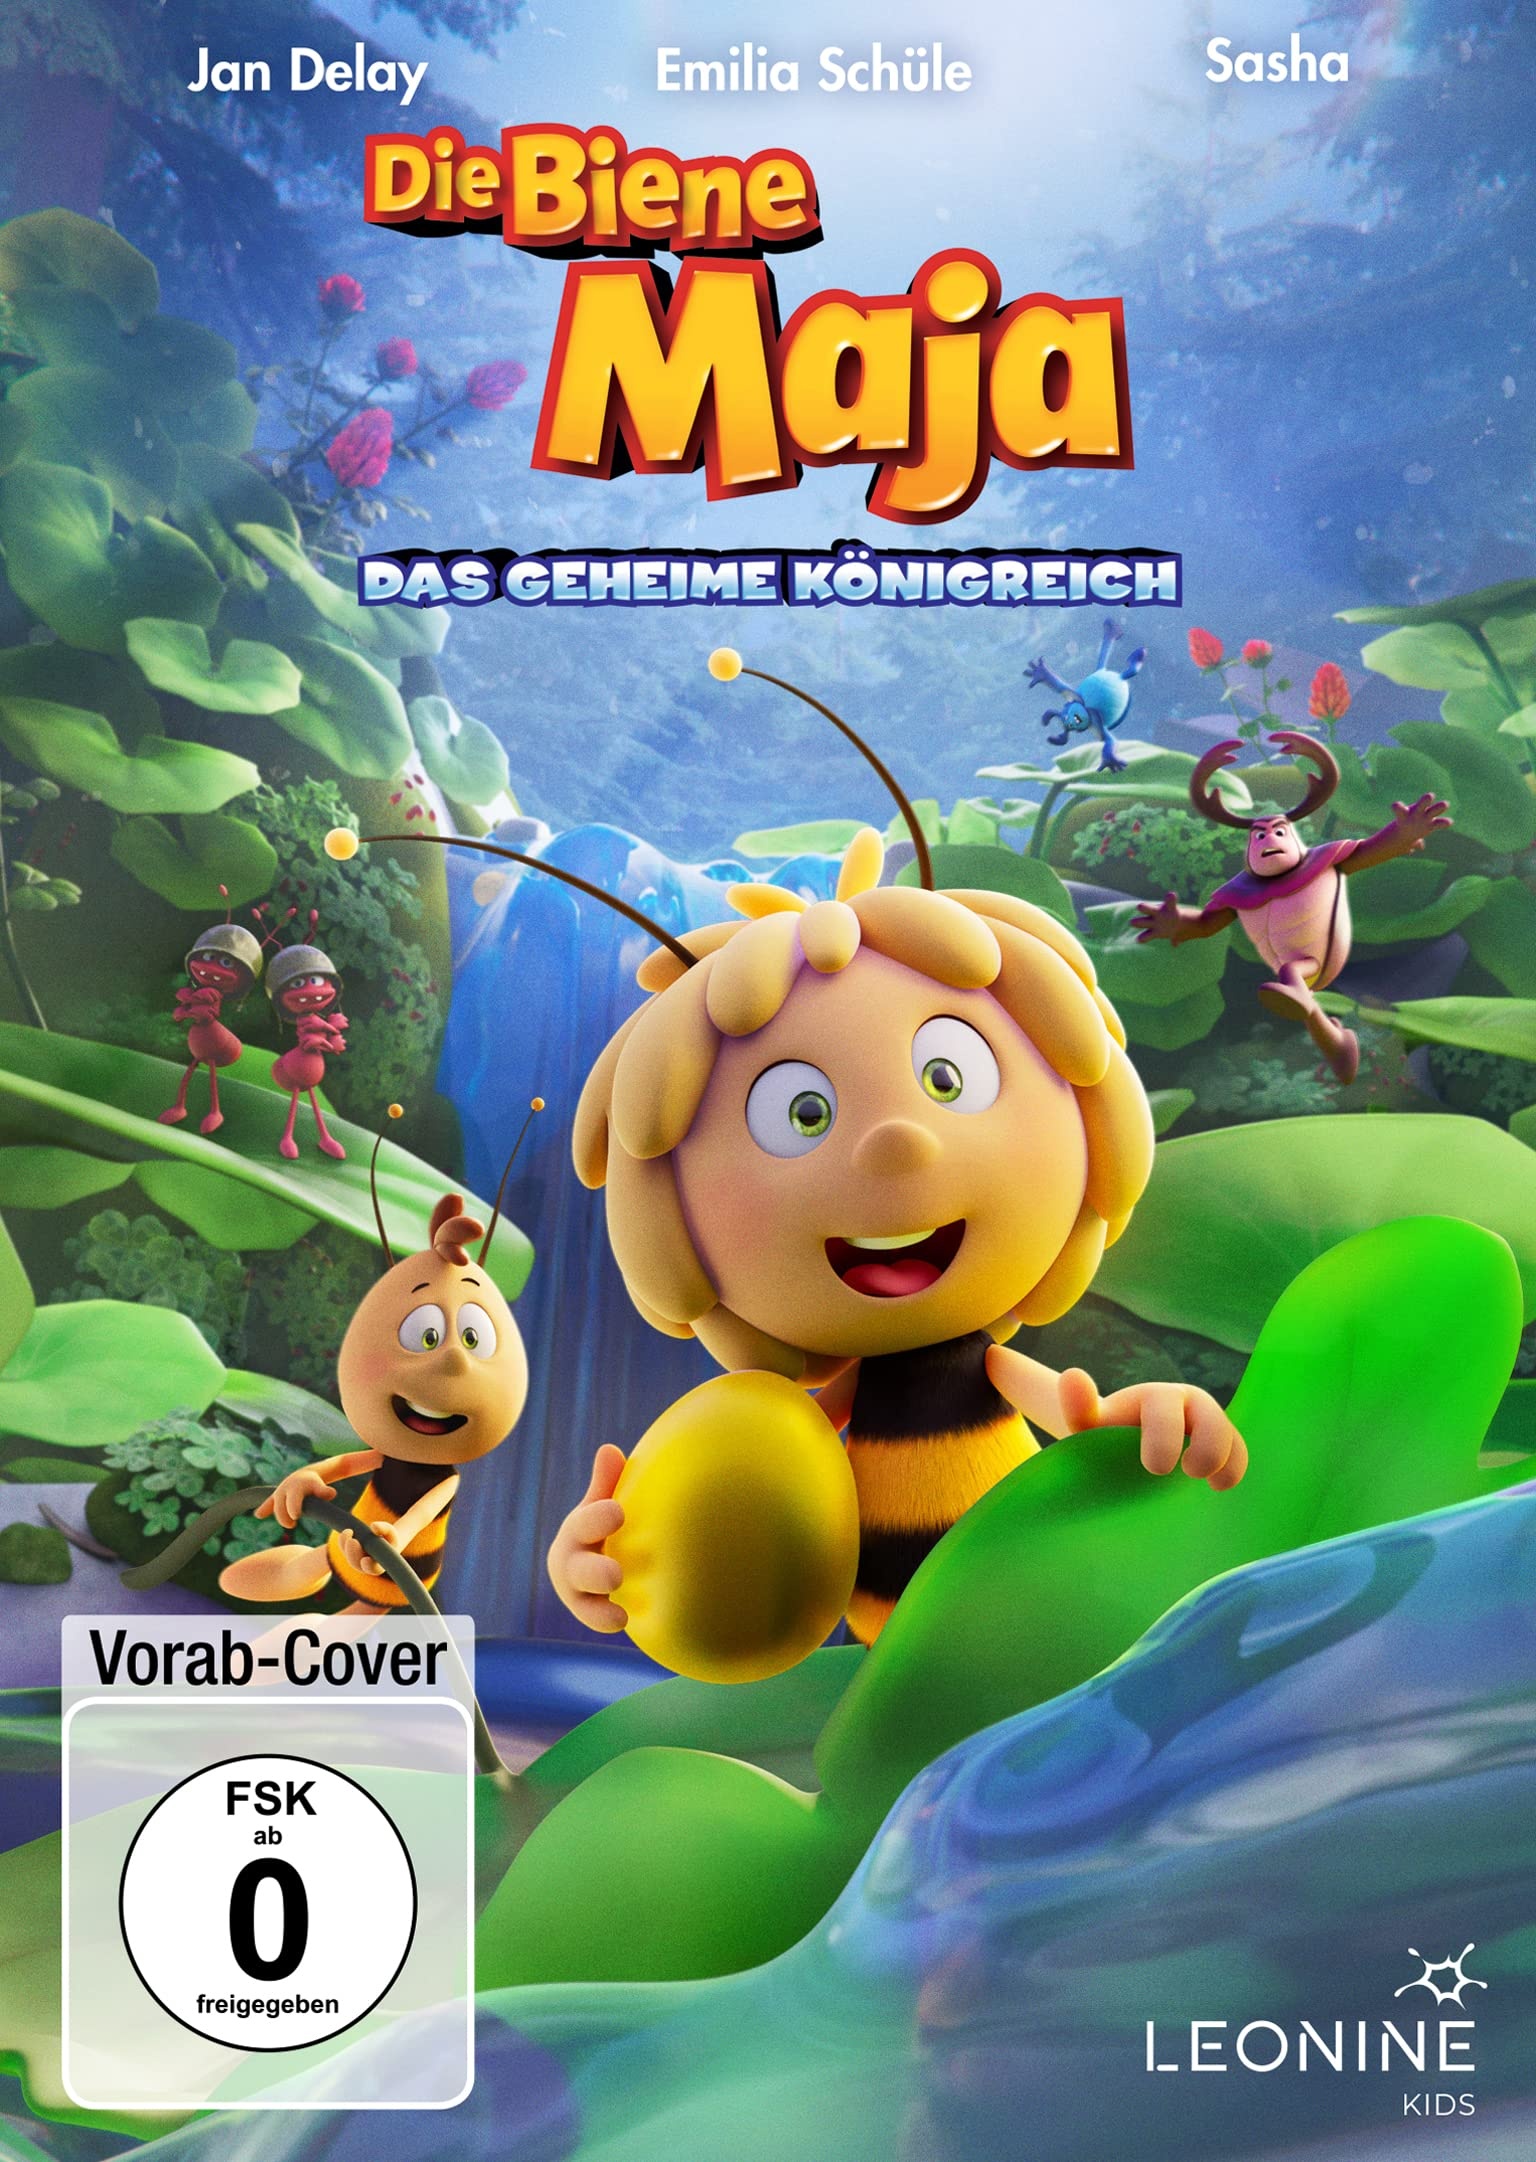 Die Biene Maja - Das geheime Königreich (Neu differenzbesteuert)